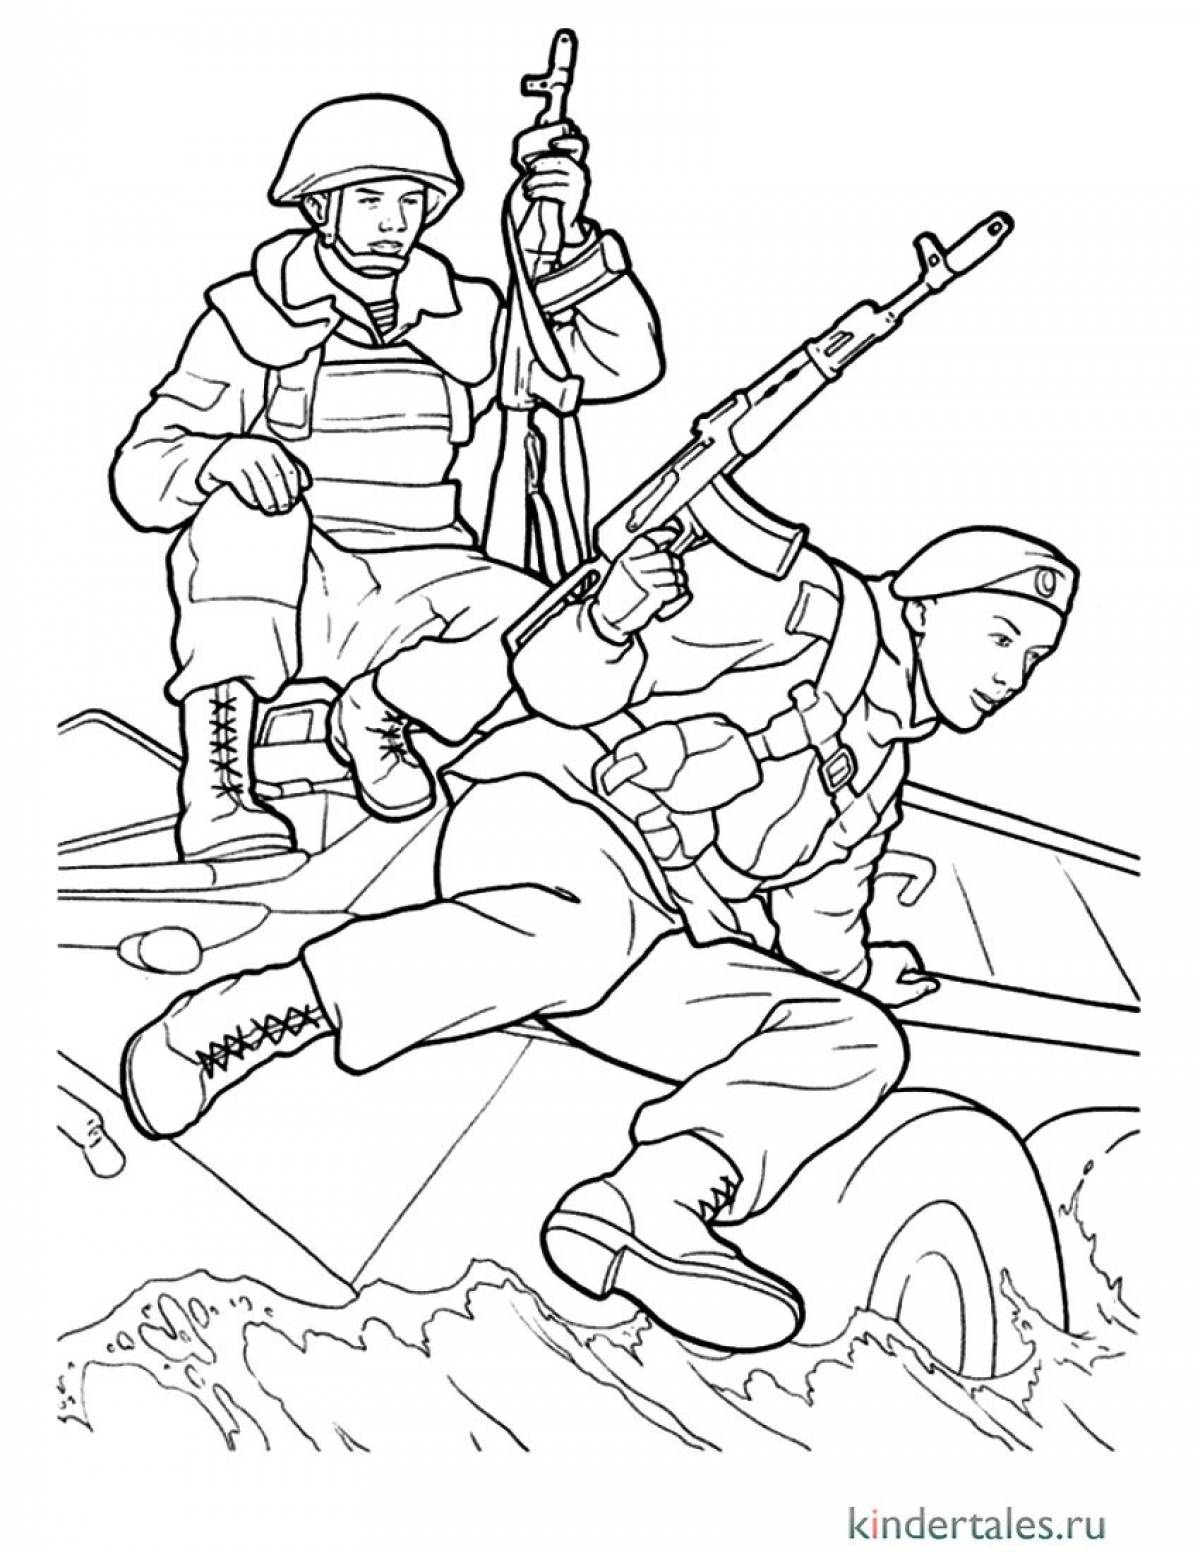 Рисунки солдатам от детей в поддержку российским солдатам #1